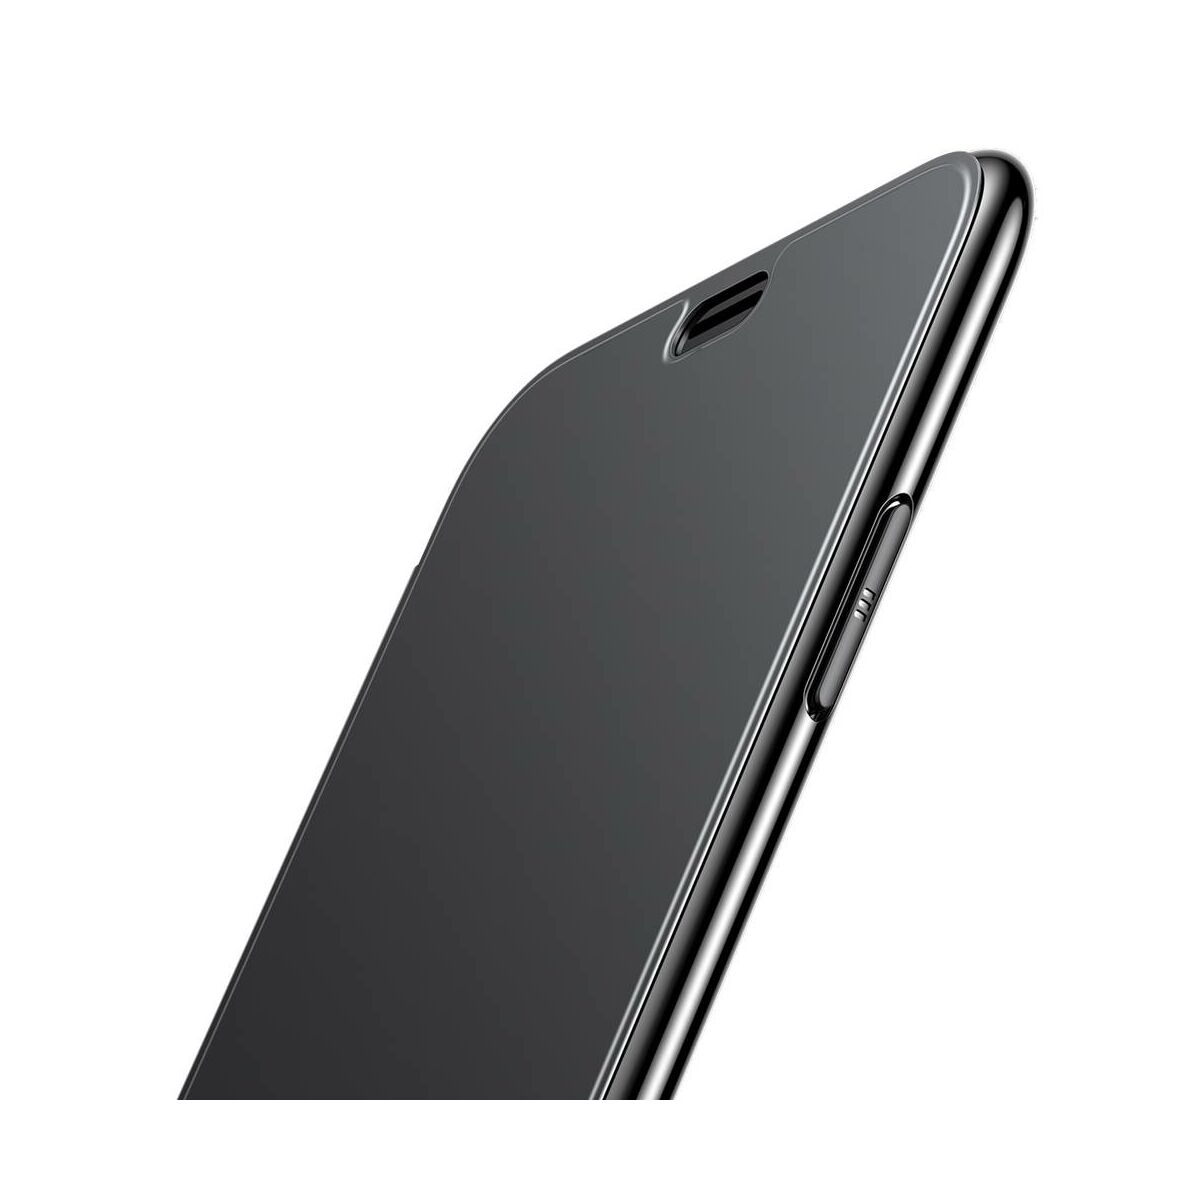 Kép 5/8 - Baseus iPhone XS tok, Touchable kihajtható, érintőfelületű tok, fekete (WIAPIPH58-TS01)